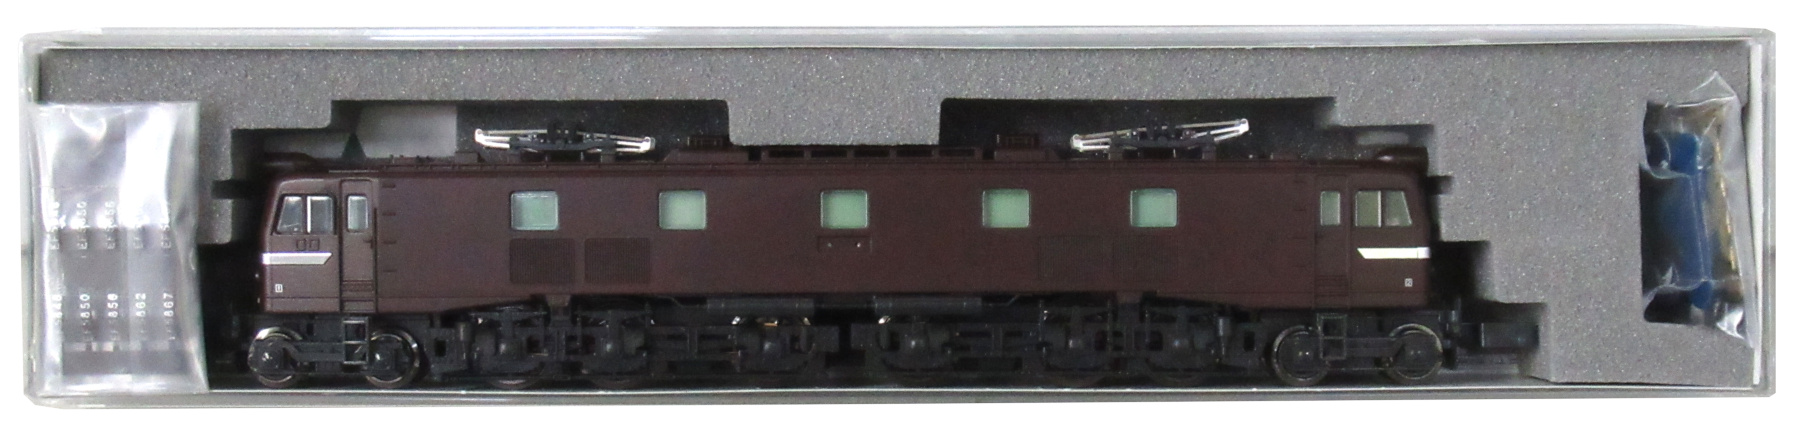 [公式]鉄道模型(JR・国鉄 形式別(N)、電気機関車、EF58)カテゴリ 